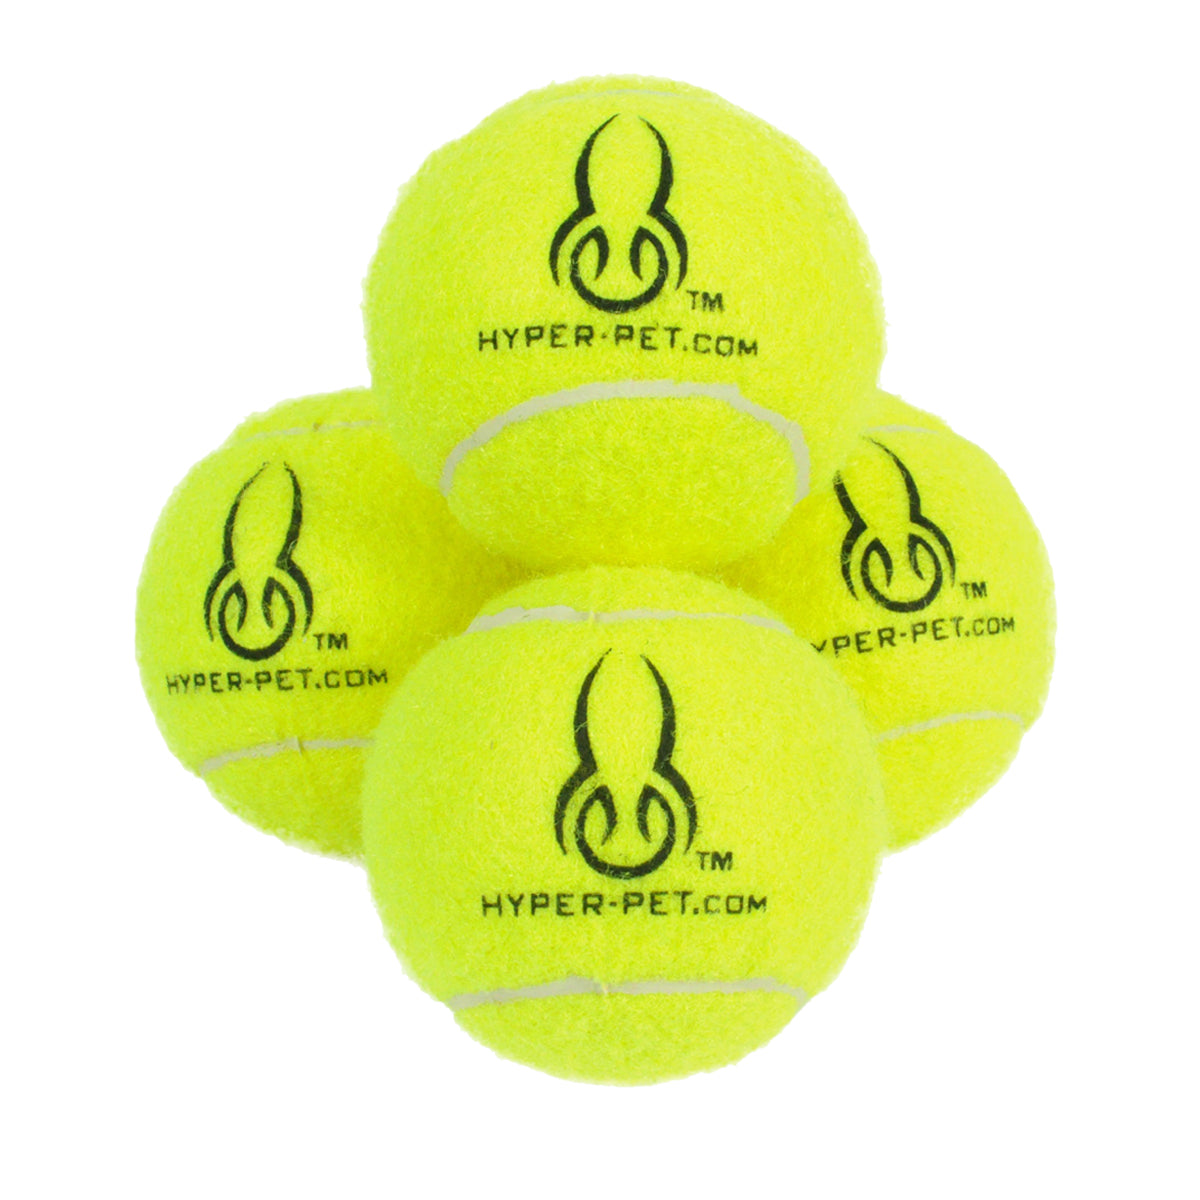 Hyper Pet Yellow Tennis Balls, 4 pack